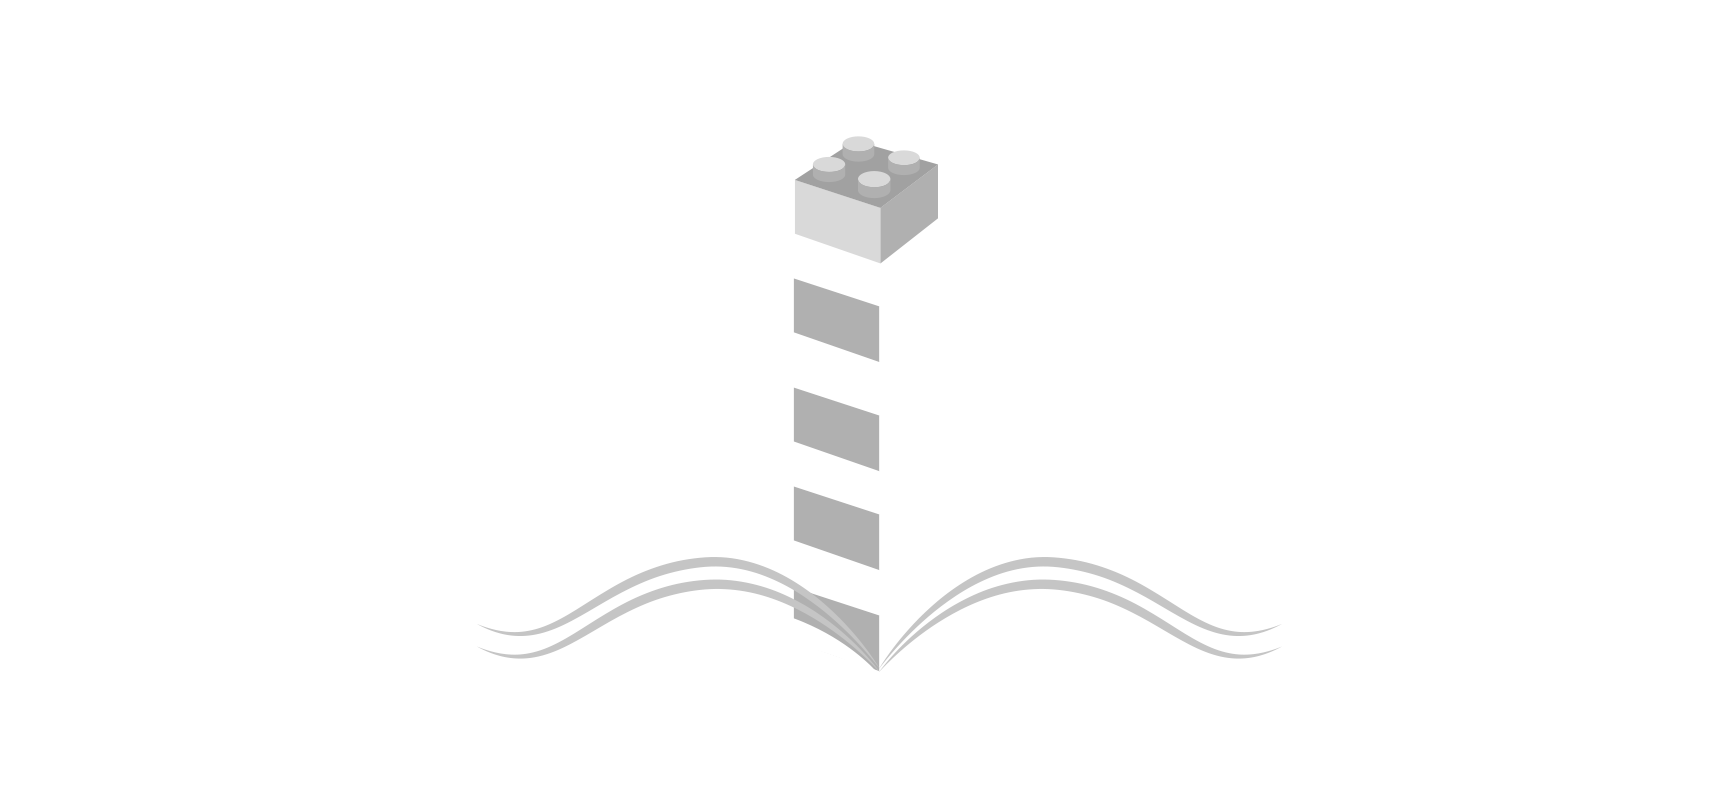 Repositorio Digital Institucional Lumieres